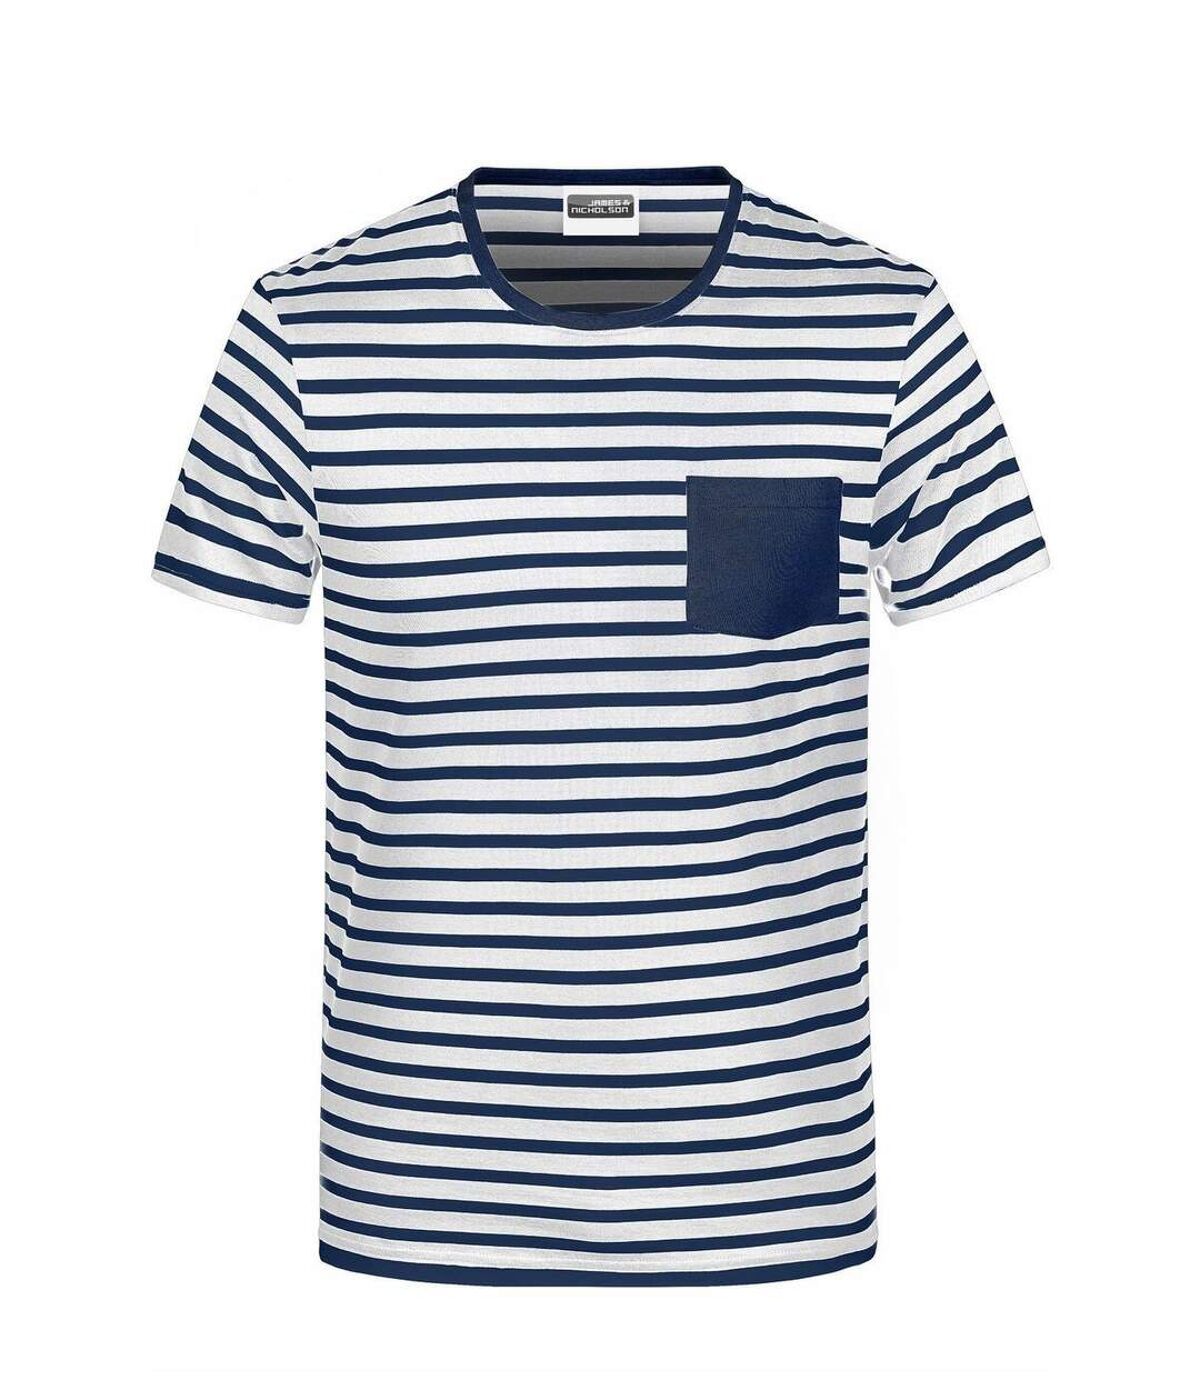 T-shirt rayé coton bio marinière homme - 8028 - blanc et bleu marine